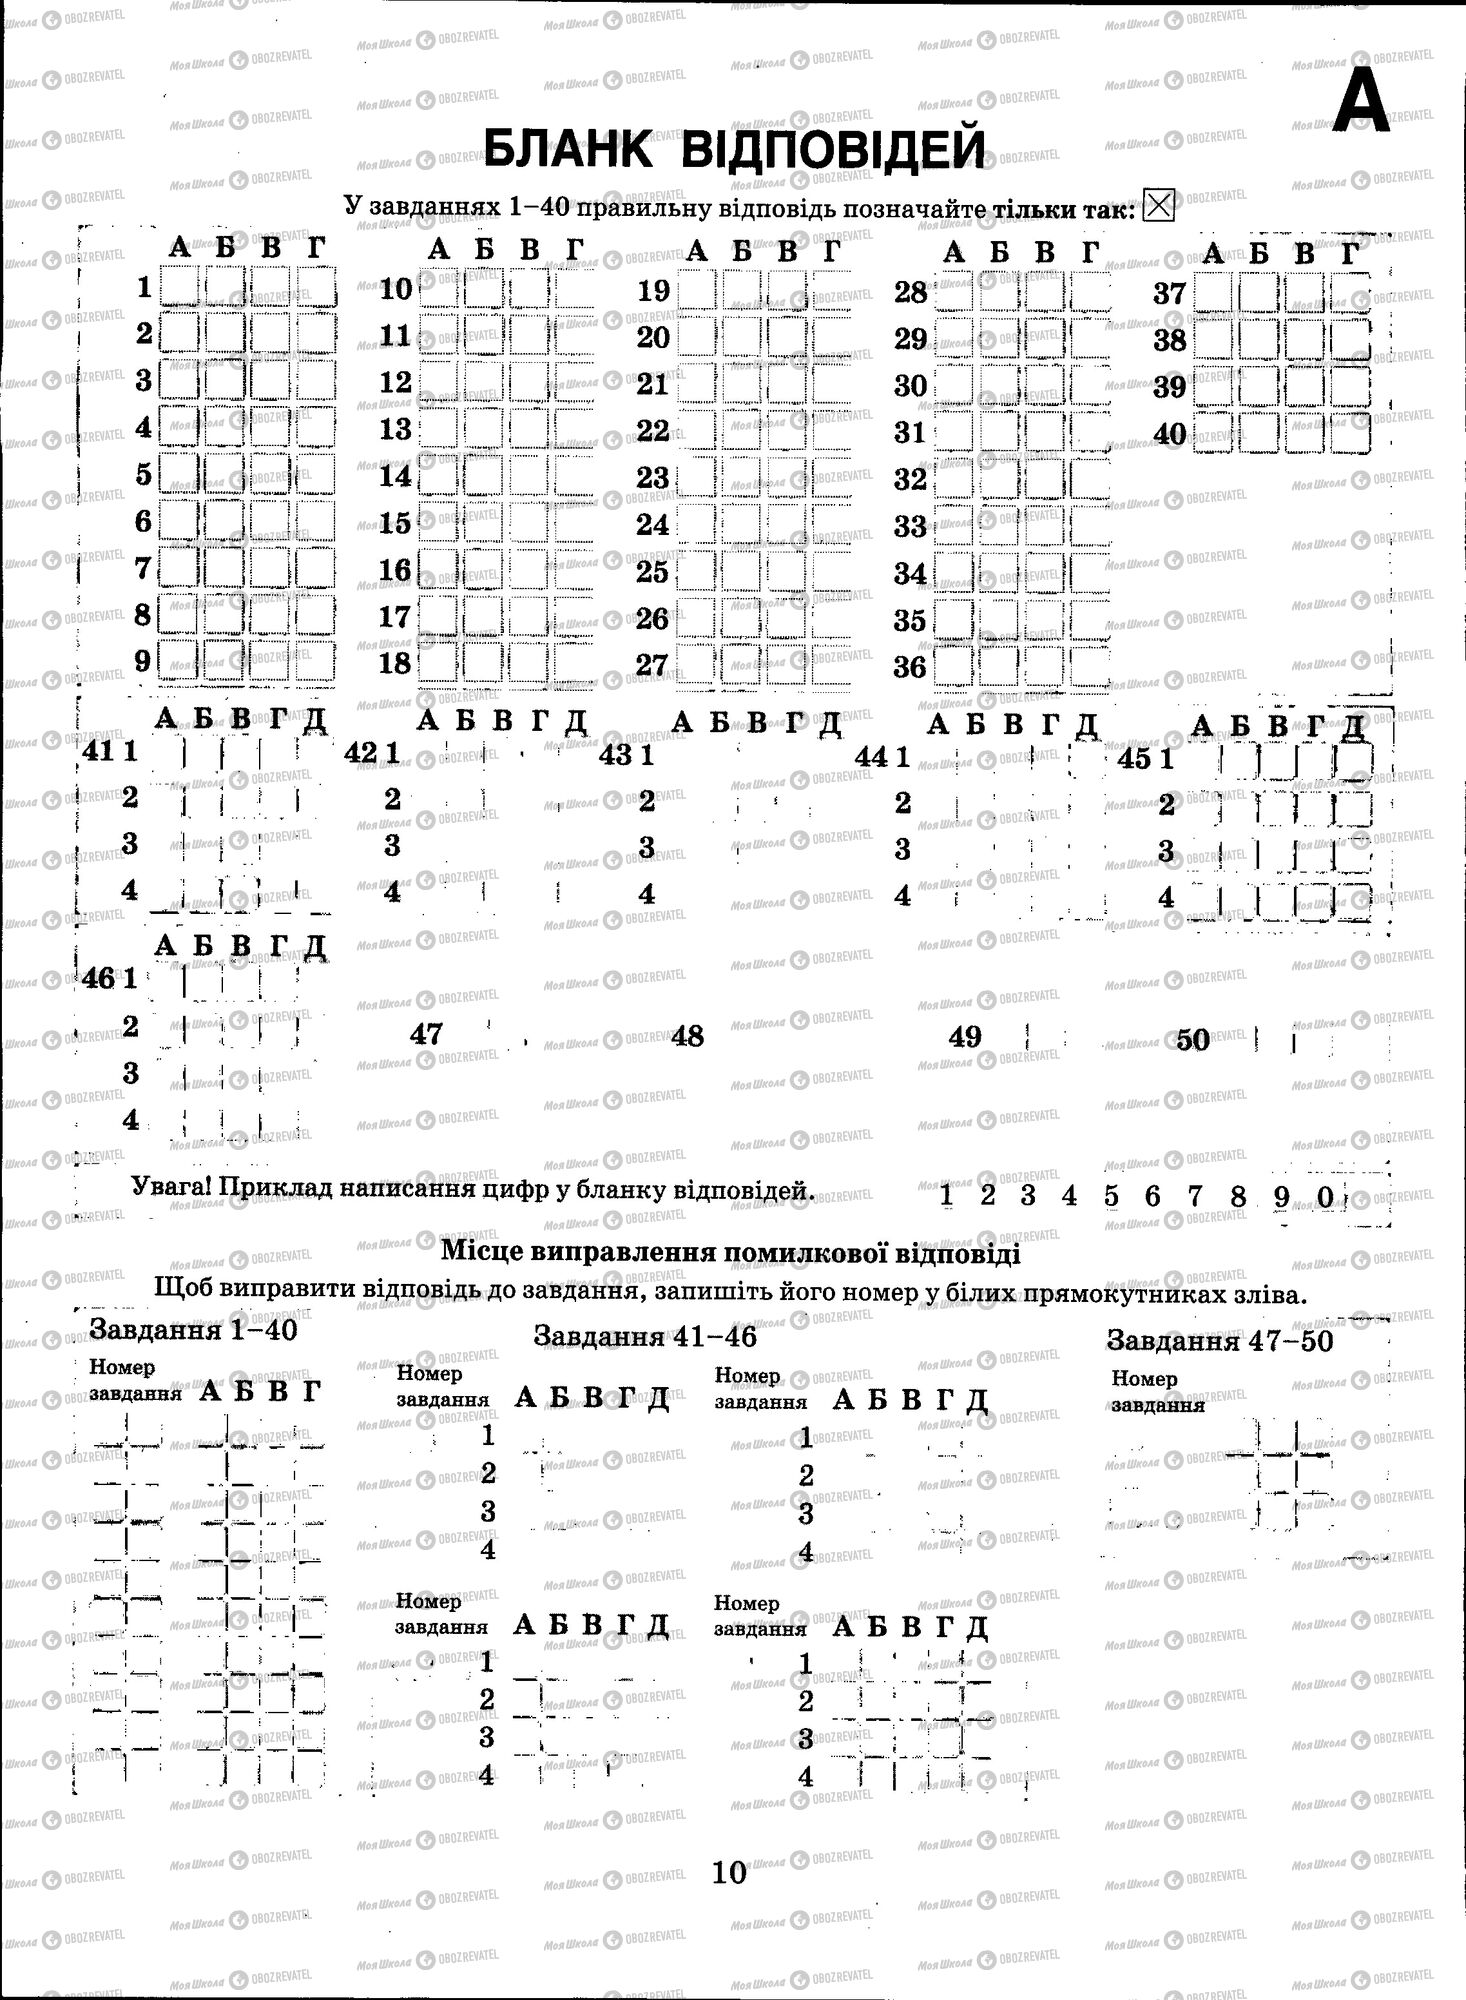 ЗНО Биология 11 класс страница 010